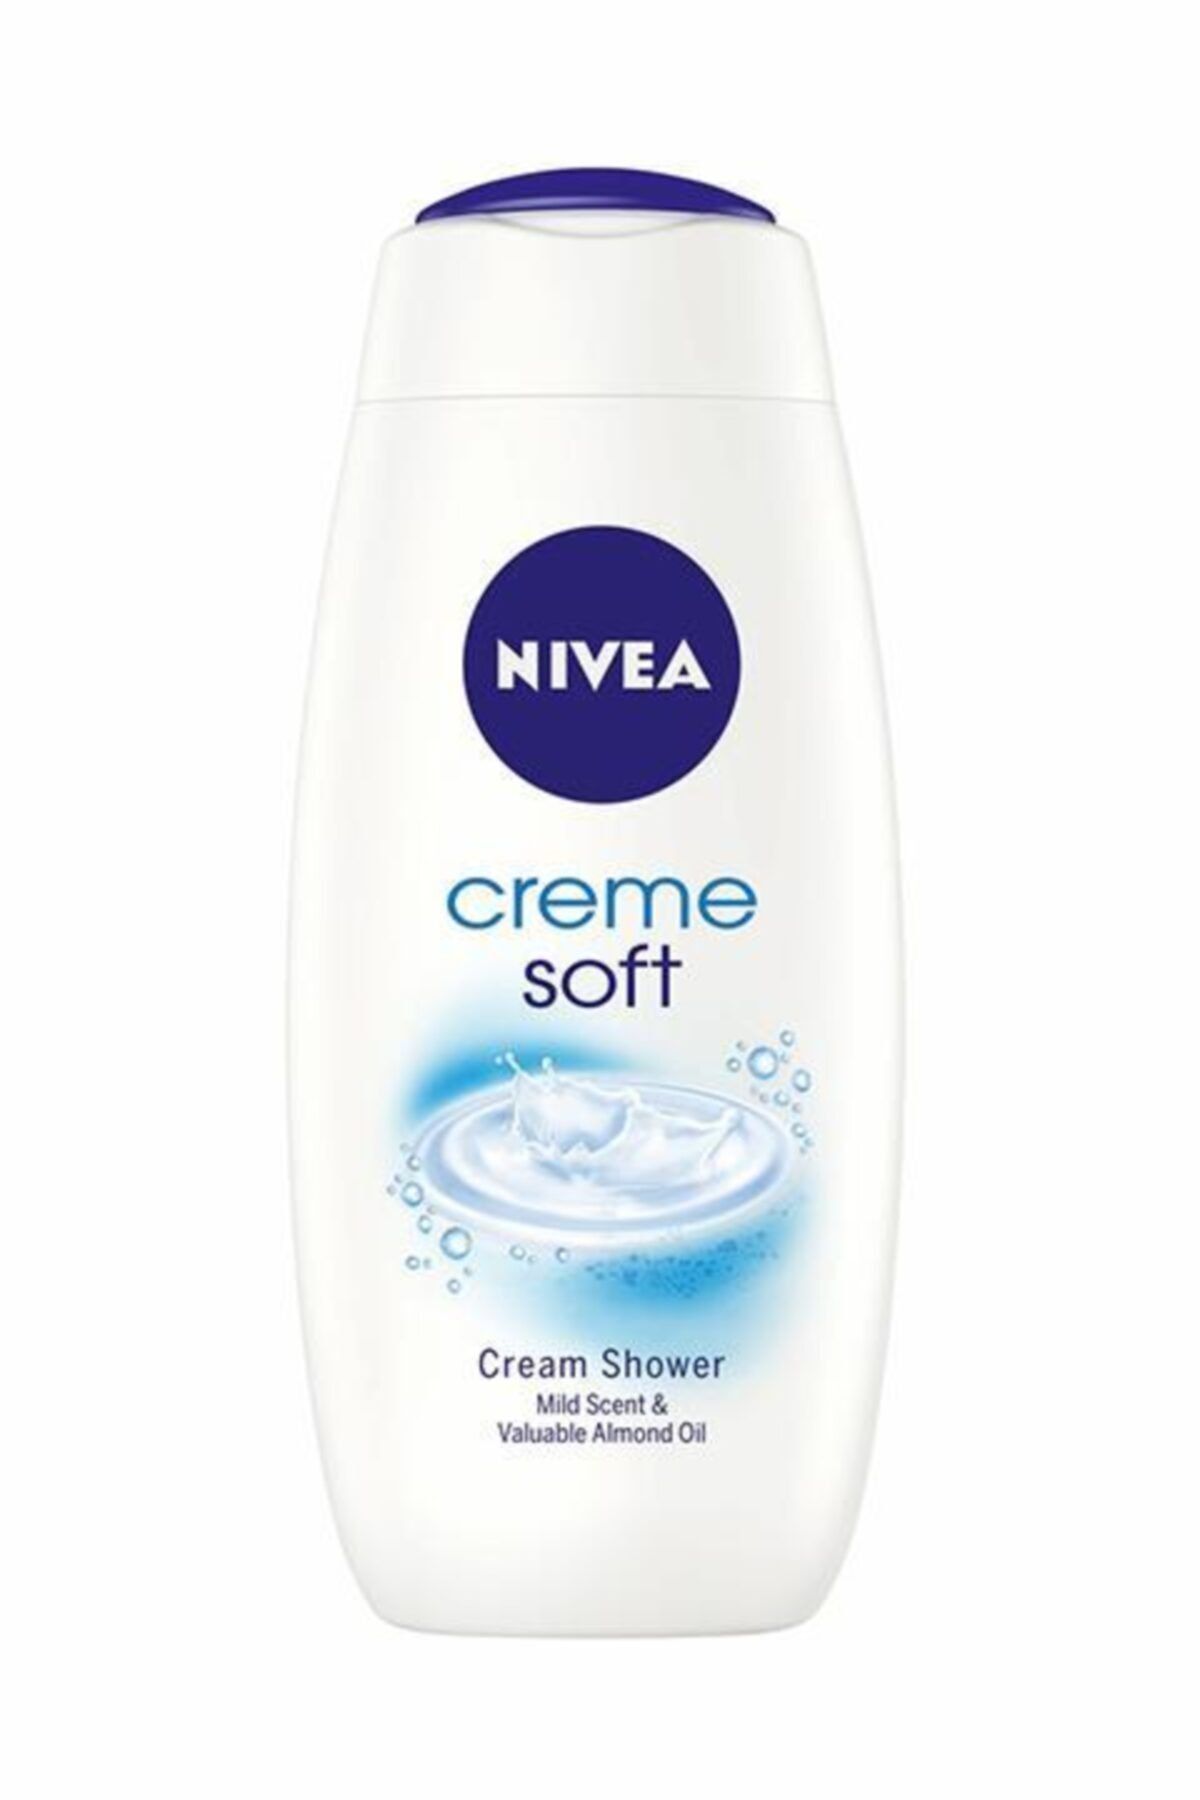 NIVEA Creme Soft Kremsi Dokunuş Banyo & Duş Jeli 400ml,badem Yağı Içeriği Ile Nemlendirici Duş Jeli